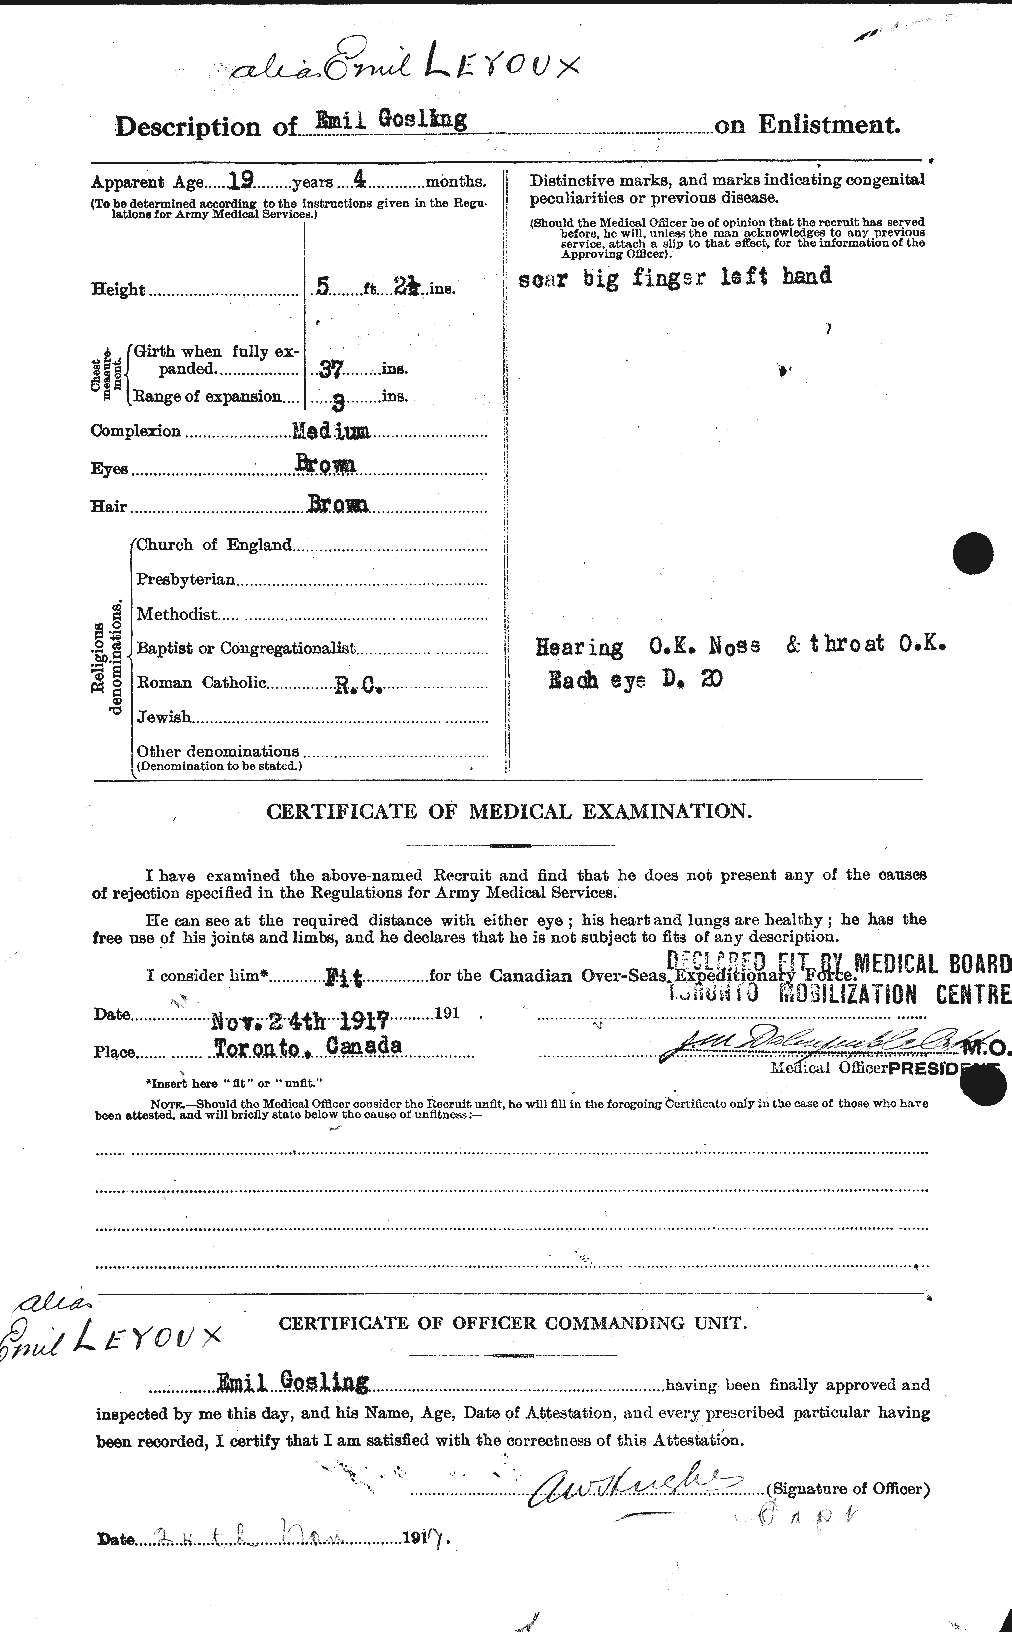 Dossiers du Personnel de la Première Guerre mondiale - CEC 466955b